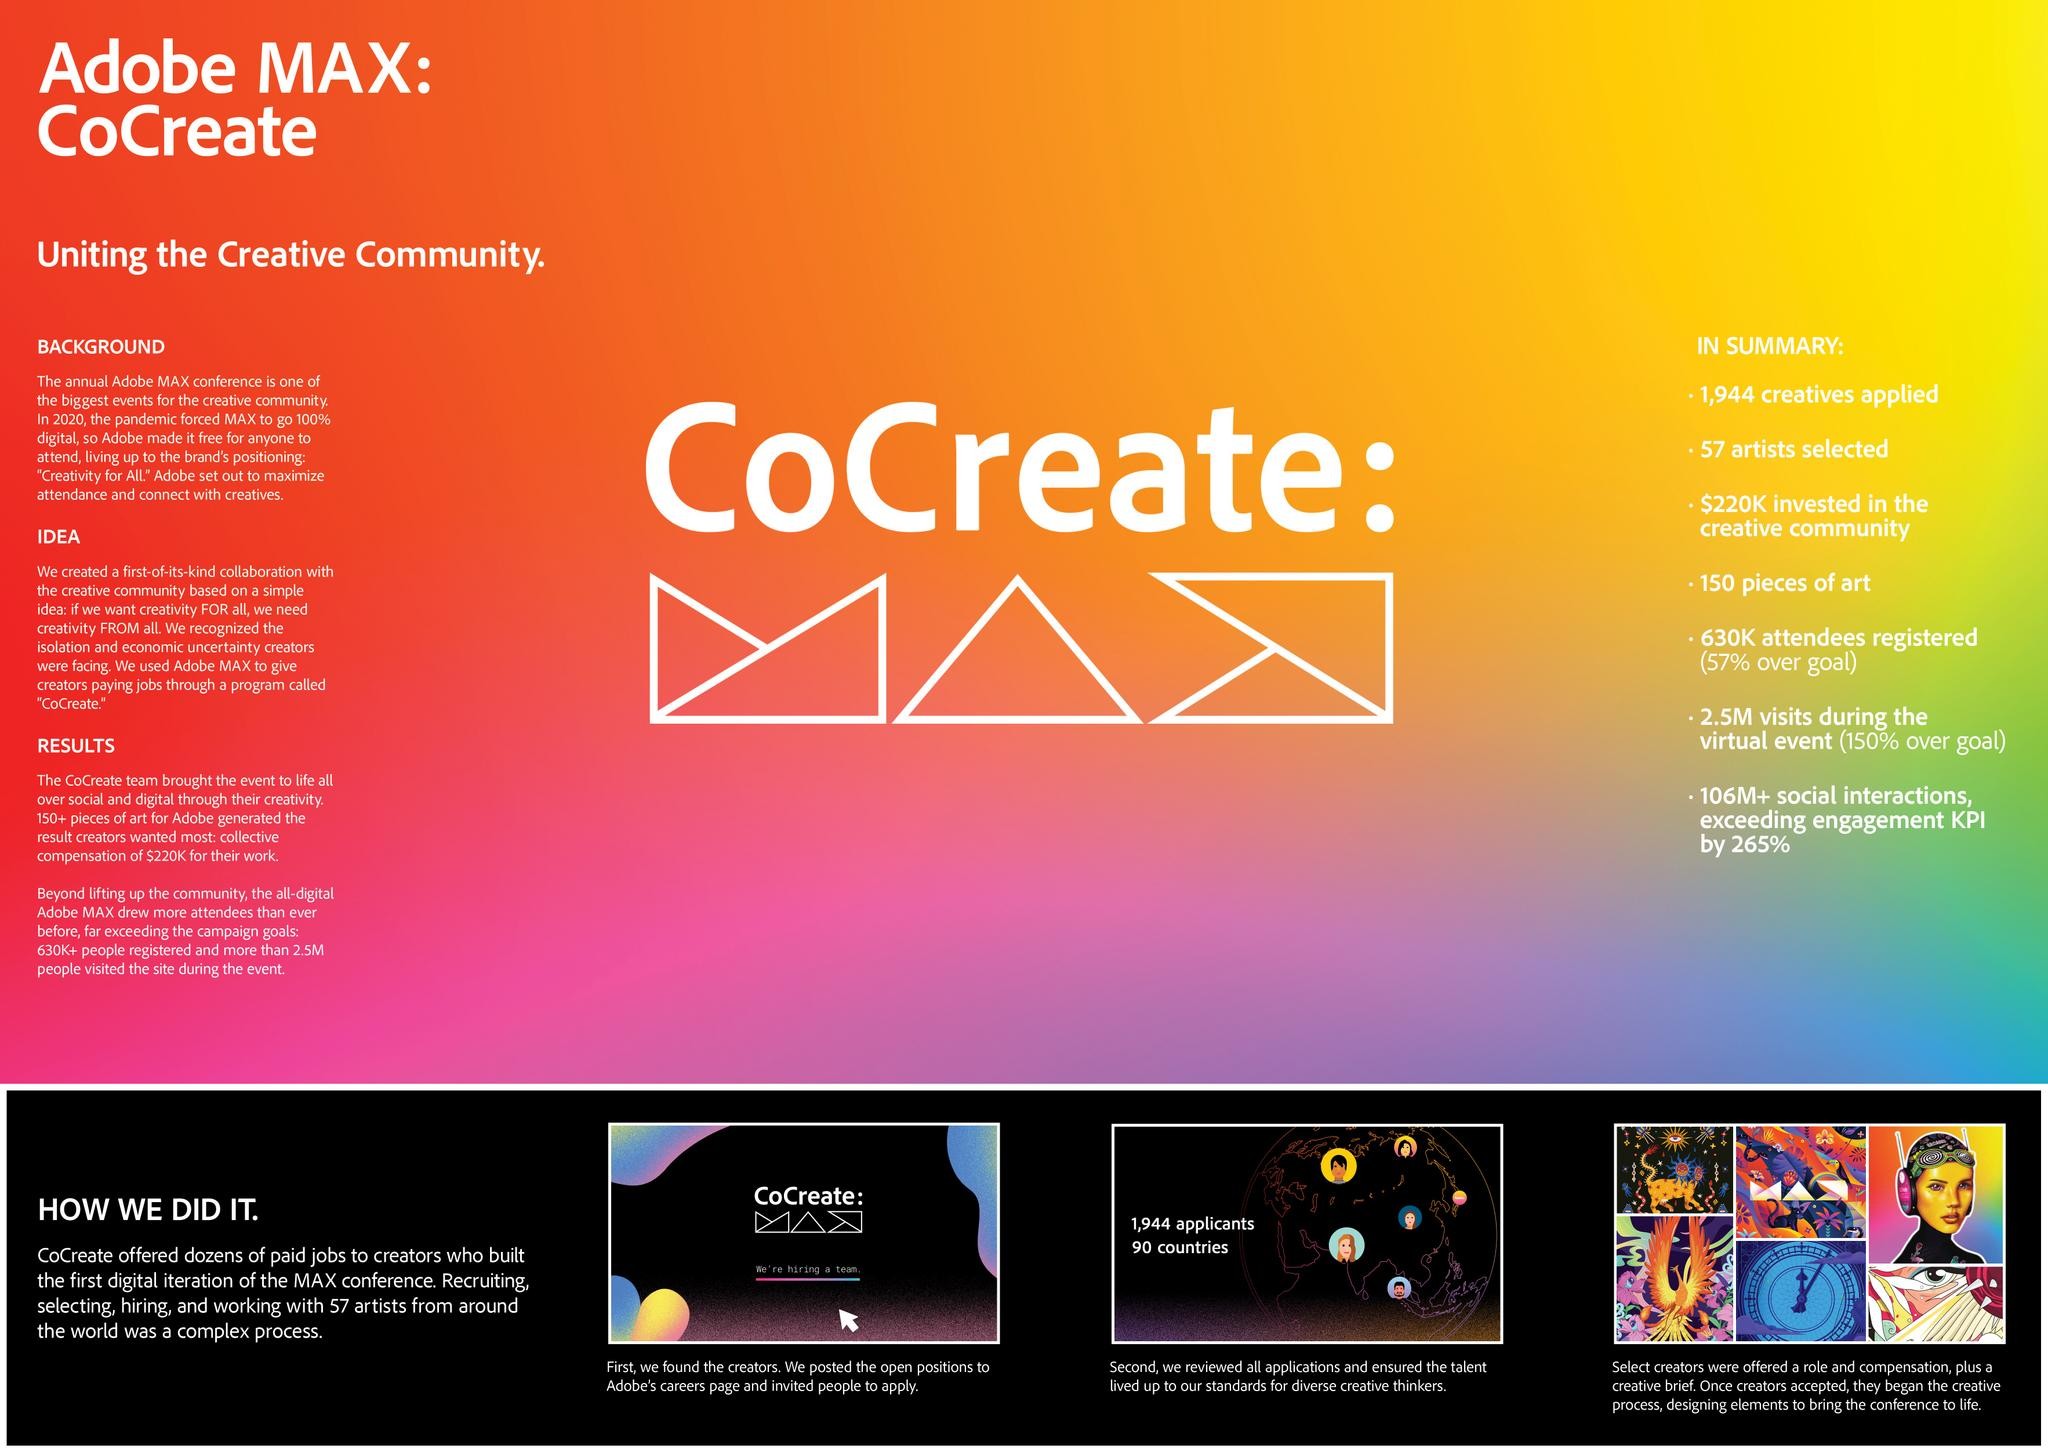 Adobe MAX "CoCreate"